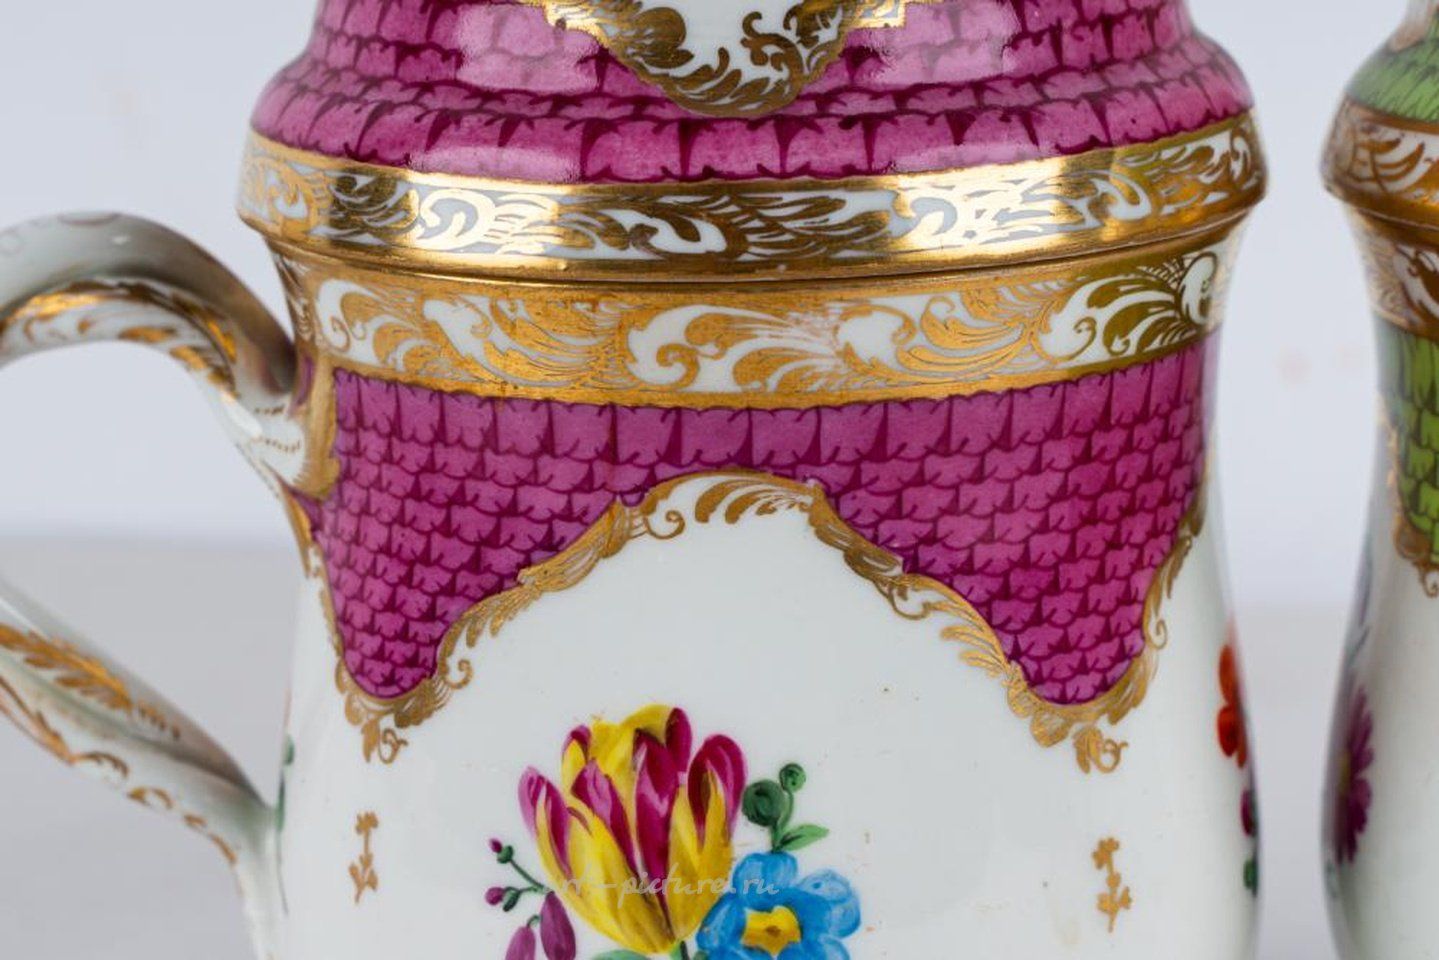 Royal Vienna , Фарфоровые чашки Вены с клеймом "пчелиный улей" и золотыми краями